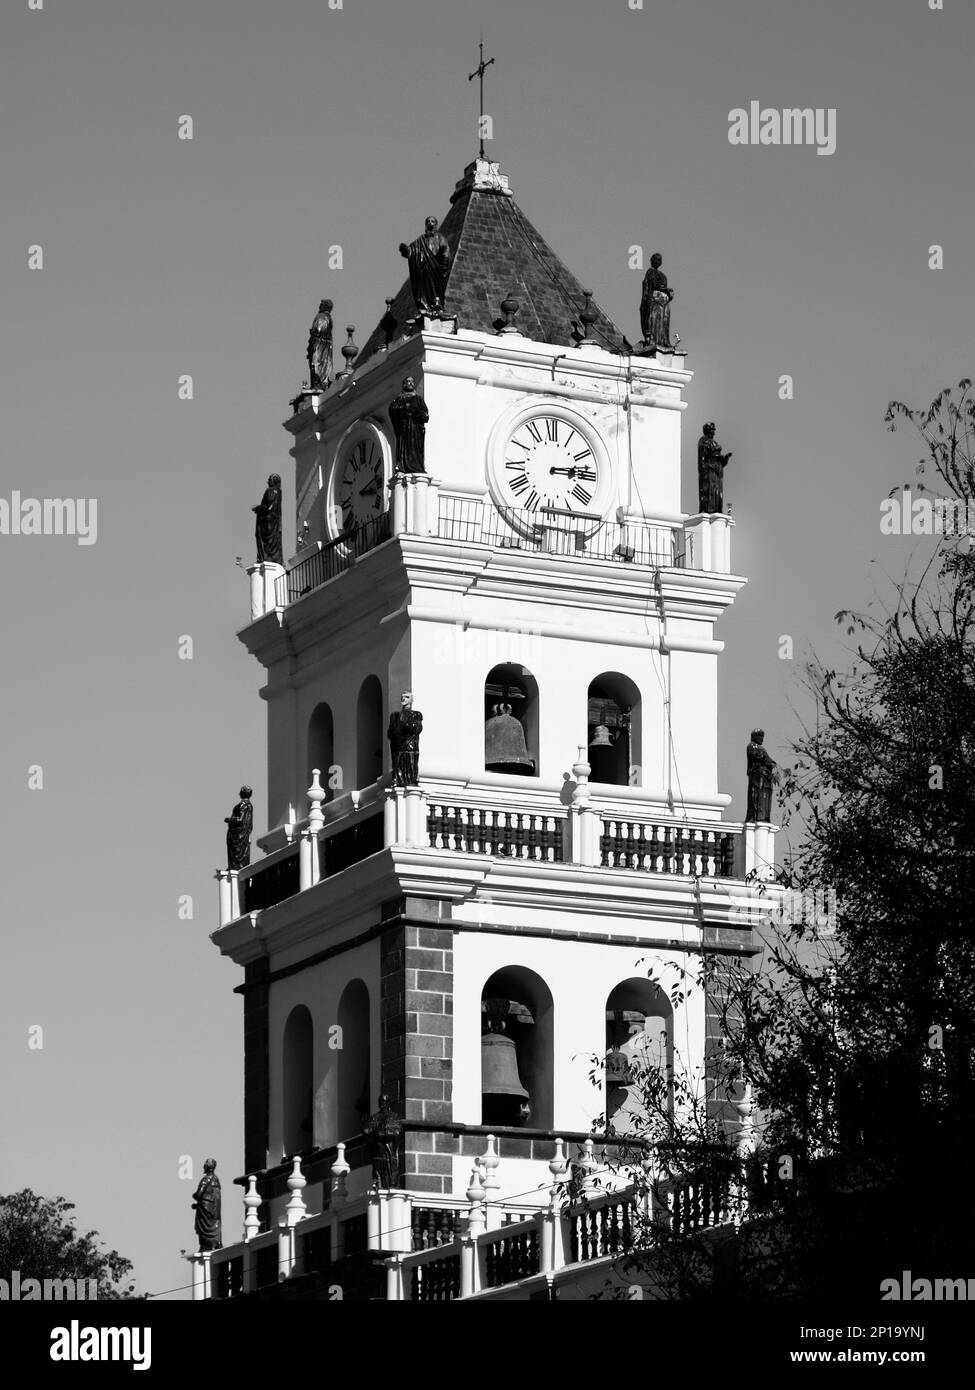 Campanario de la Catedral de Sucre, Sucre, Bolivia. Imagen en blanco y negro. Foto de stock